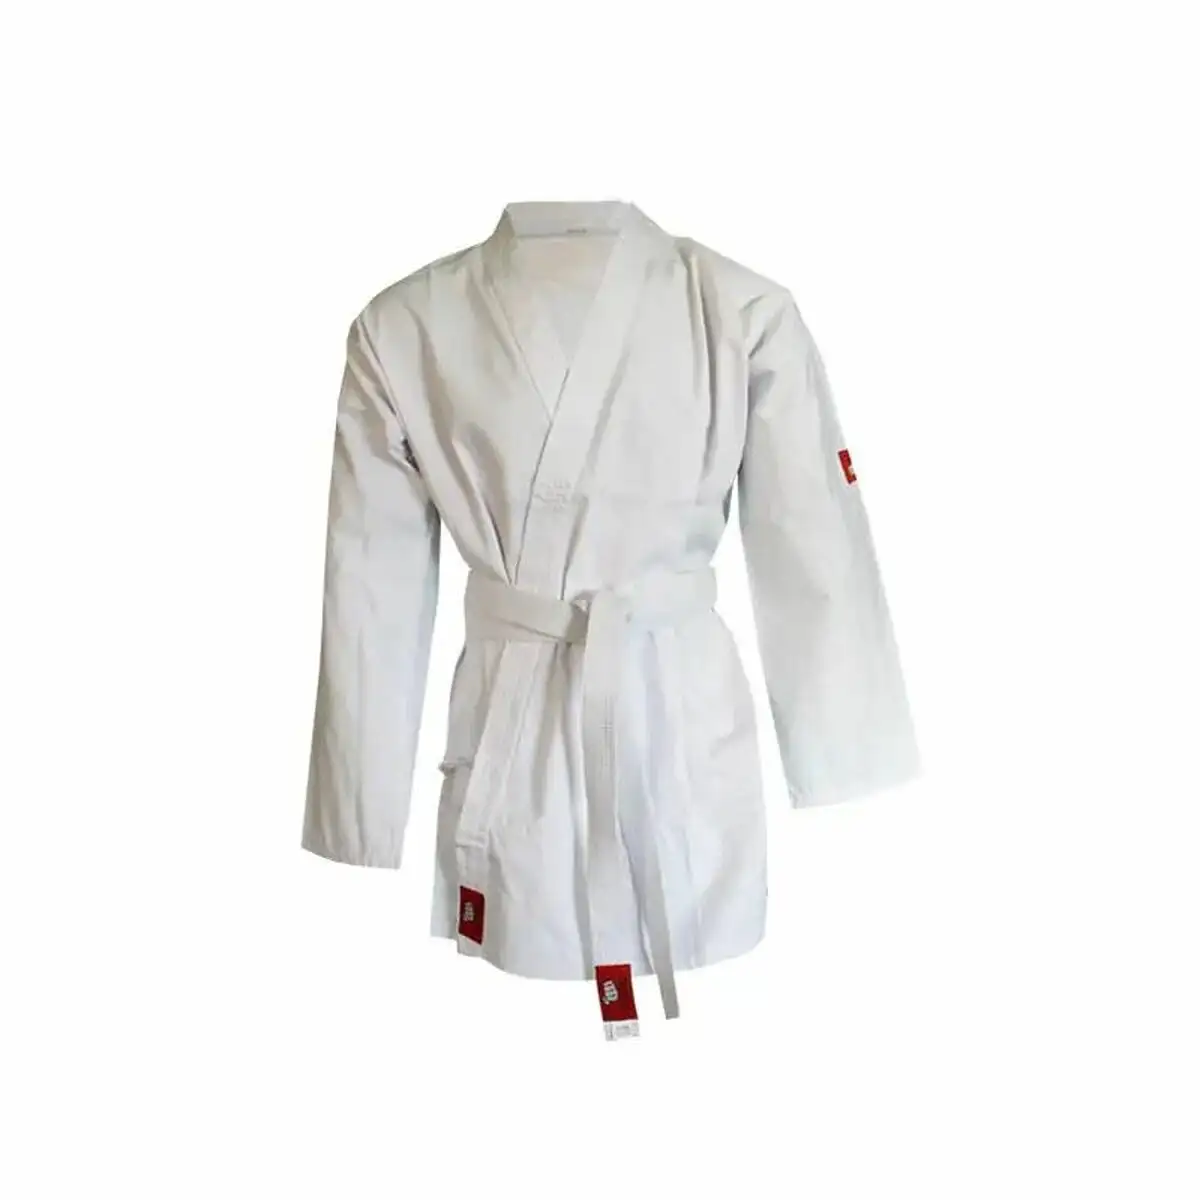 Kimono jim sports yoshiro karategui blanc 140 cm _7520. DIAYTAR SENEGAL - L'Art de Vivre le Shopping en Ligne. Découvrez notre plateforme intuitive et trouvez des produits qui vous inspirent et vous enchantent, à chaque clic.